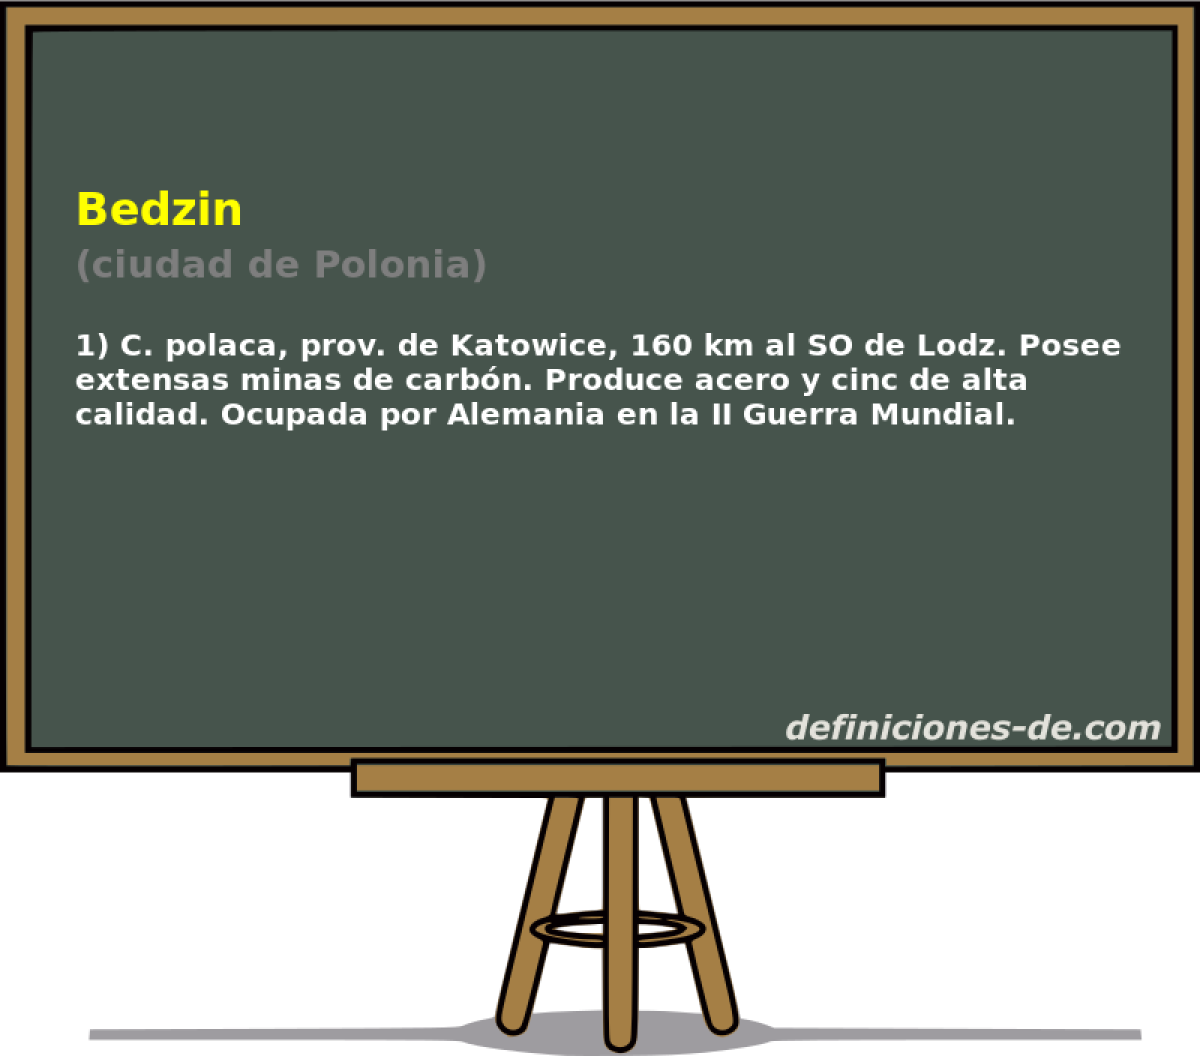 Bedzin (ciudad de Polonia)